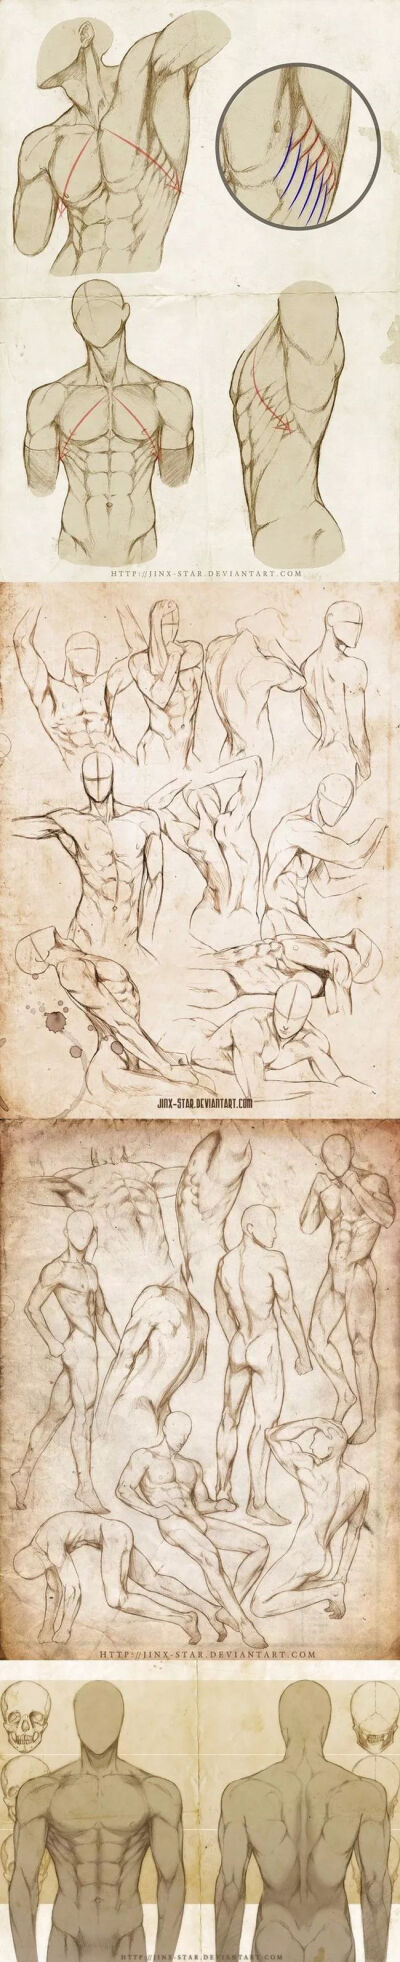 男性人体的肌肉结构绘画教程,想画出帅气有魅力的男性,富有哲♂学气息